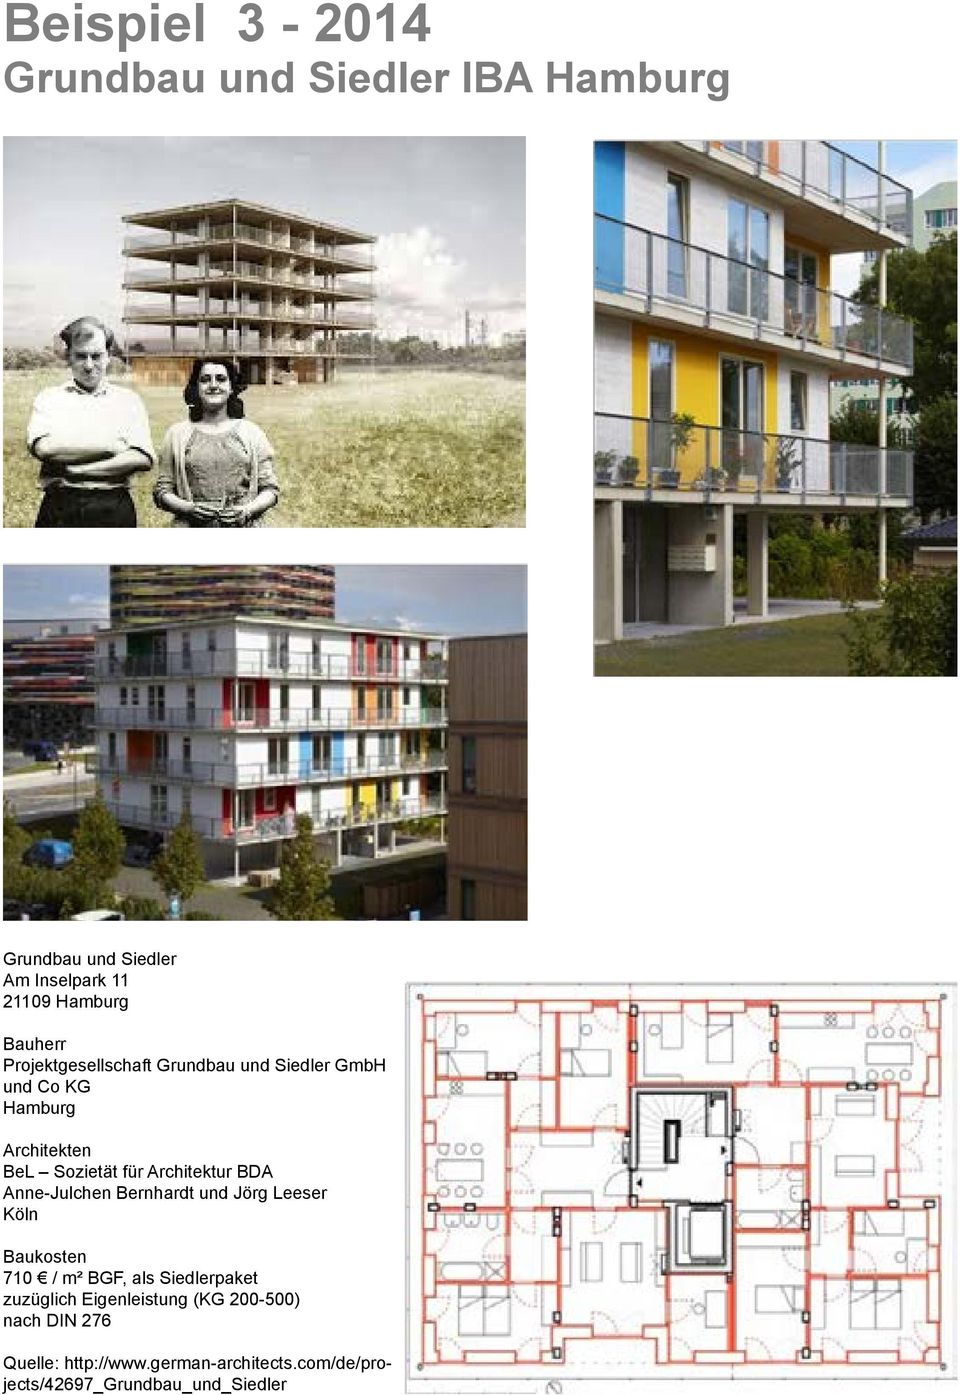 BDA Anne-Julchen Bernhardt und Jörg Leeser Köln Baukosten 710 / m² BGF, als Siedlerpaket zuzüglich